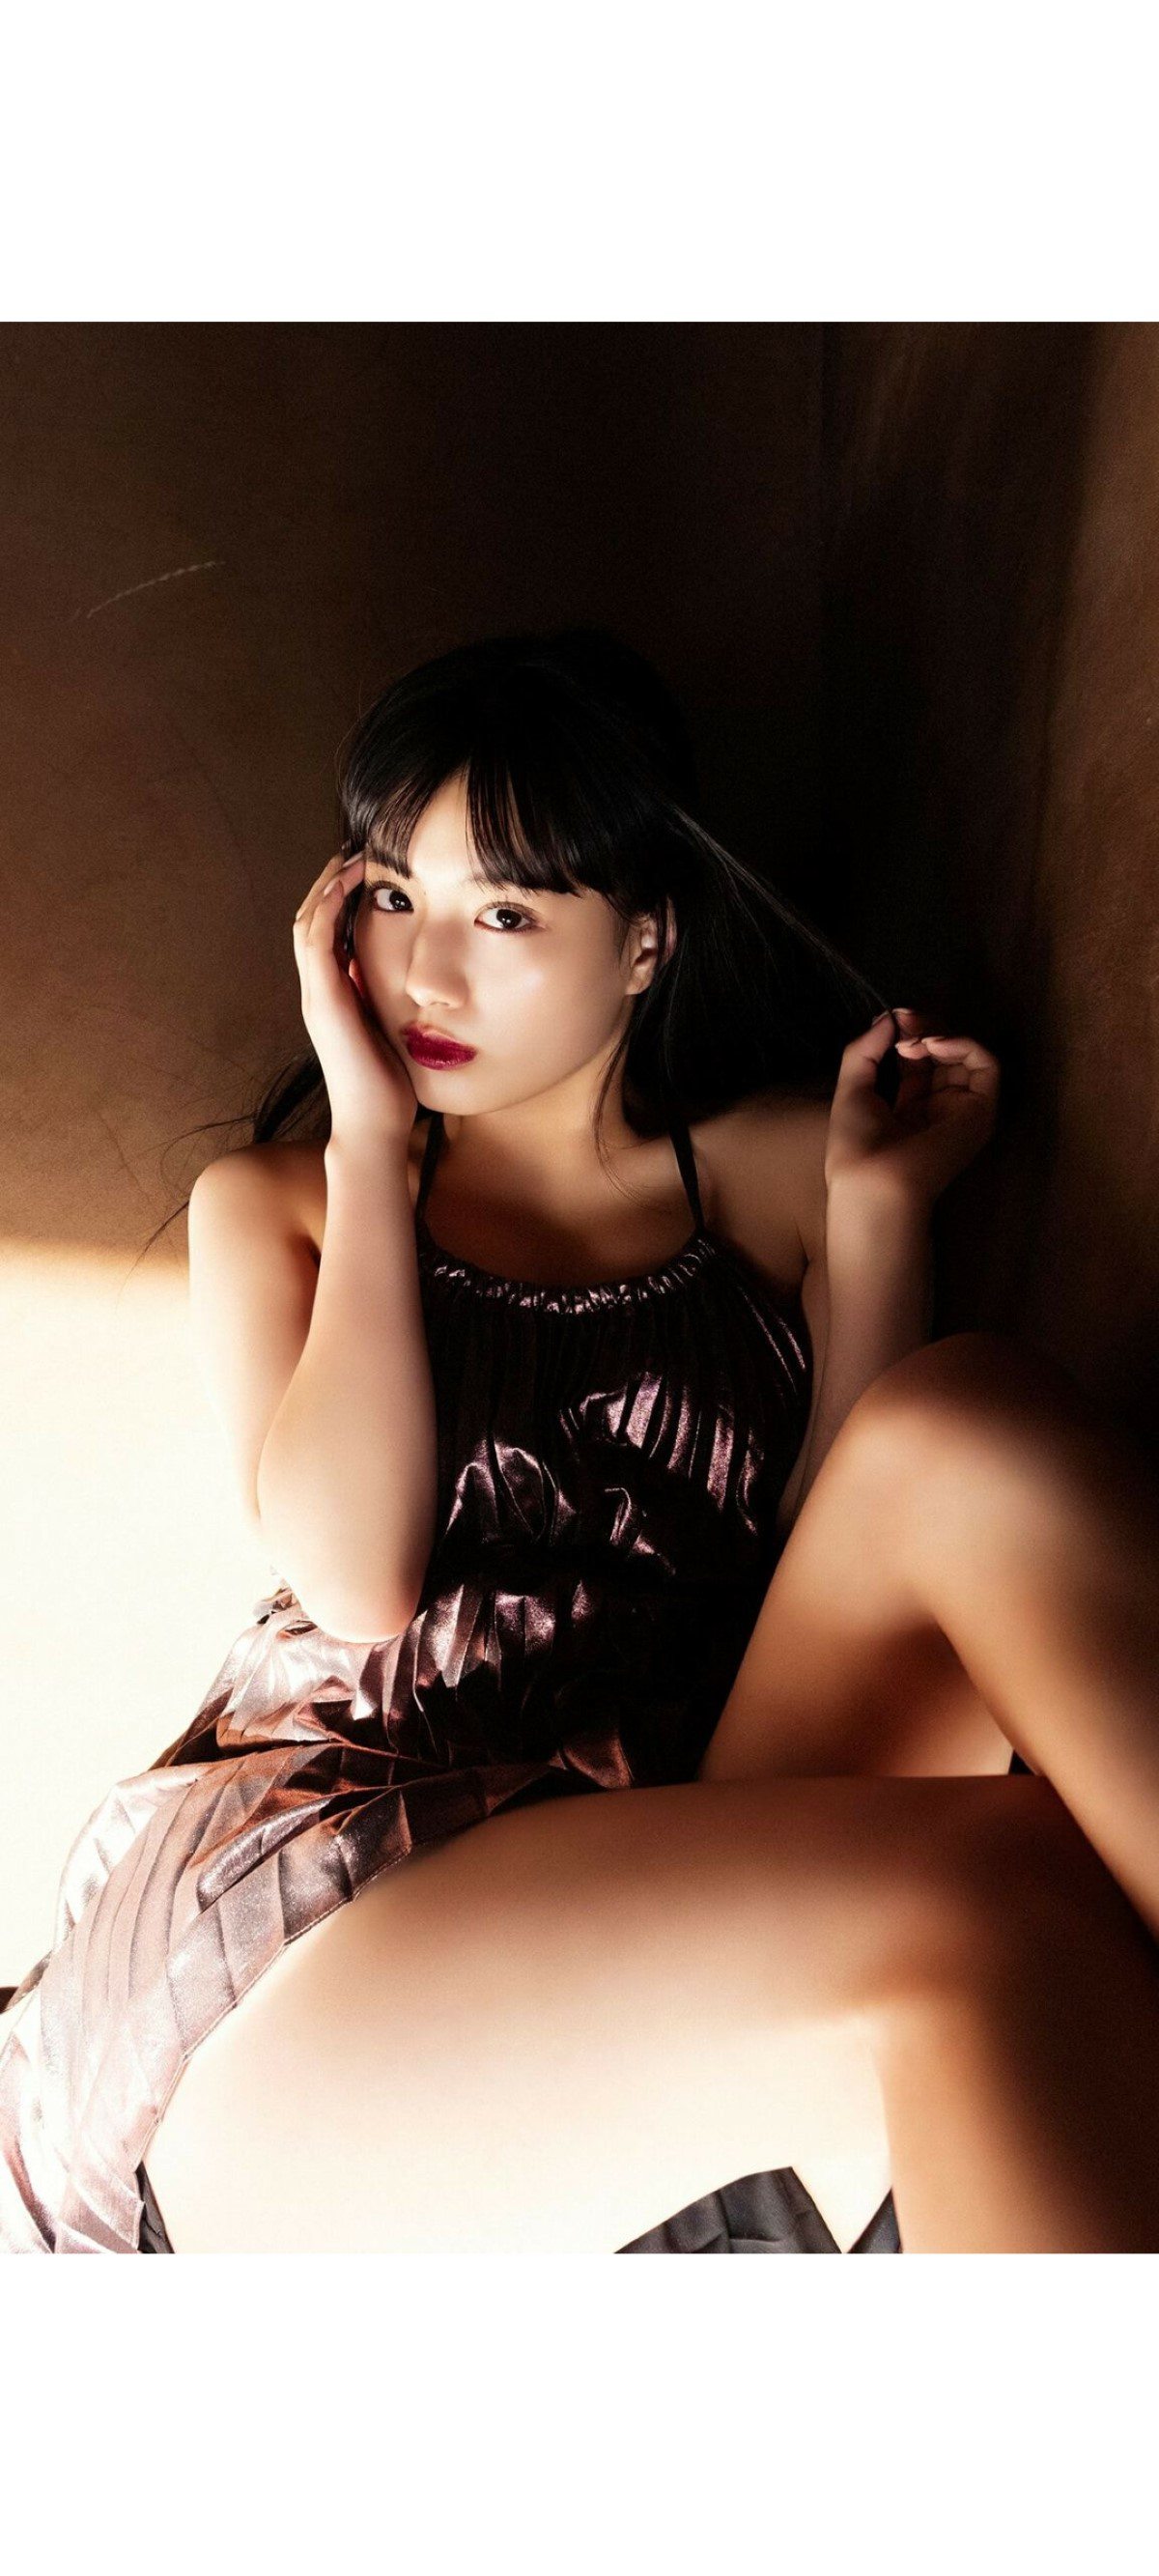 Weekly Photobook 2020 12 07 Noa Tsurushima 鶴嶋乃愛 A natural actress 生まれながらにして女優 0055 9535030331.jpg